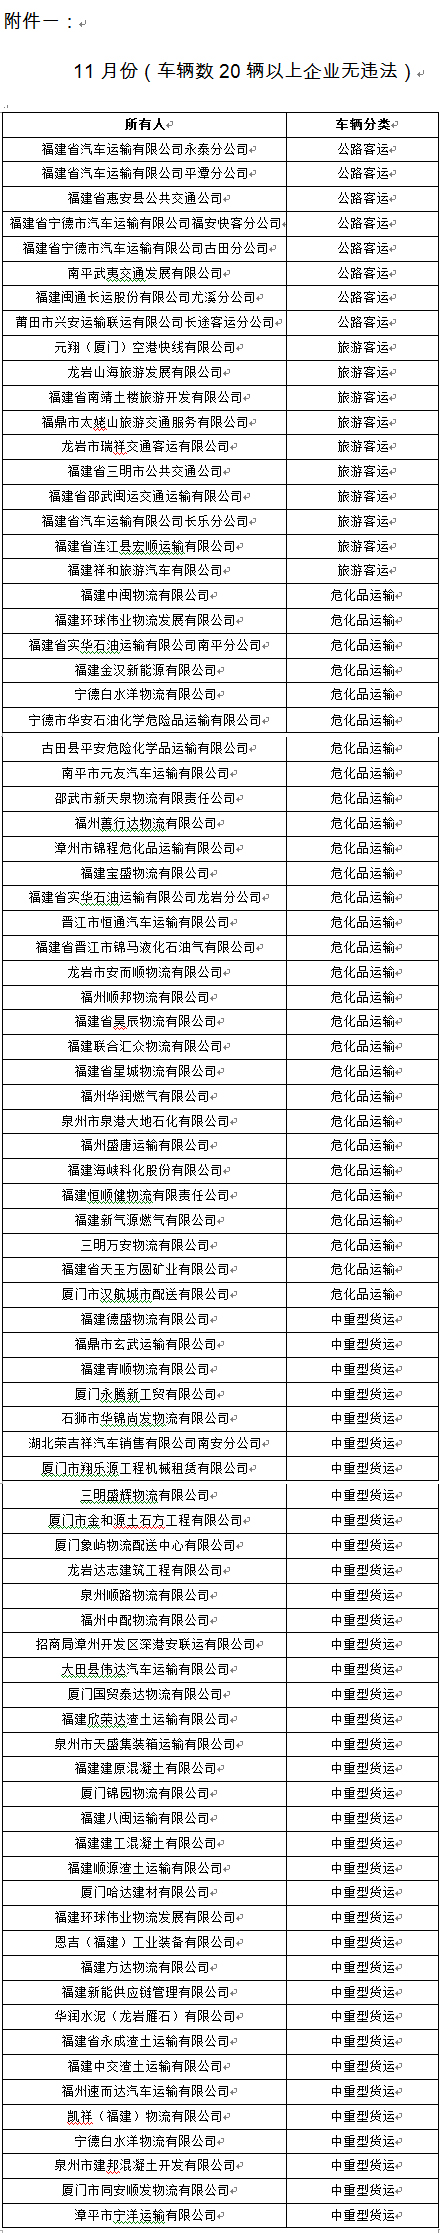 福建交警公布11月份全省道路运输企业“红黑榜”